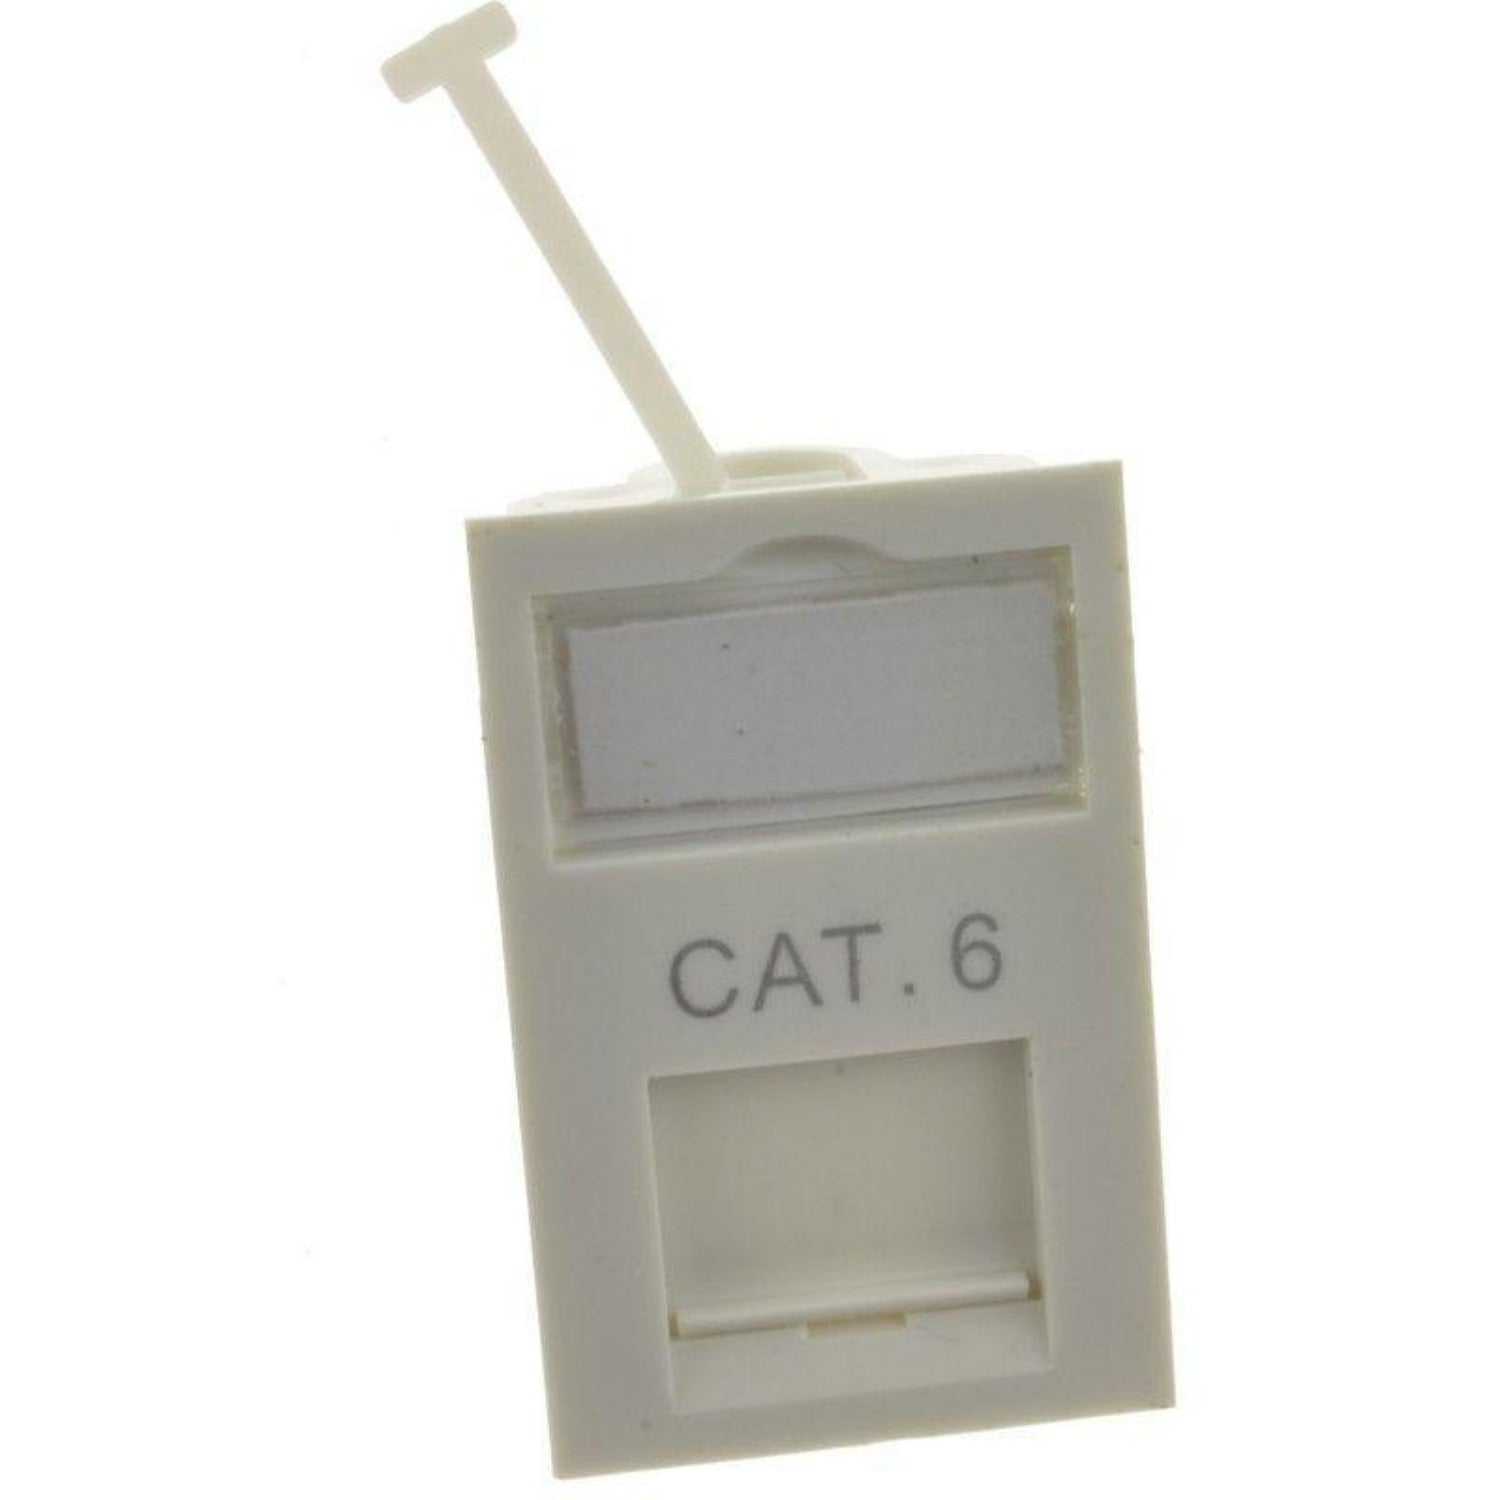 Cat6 UTP data module